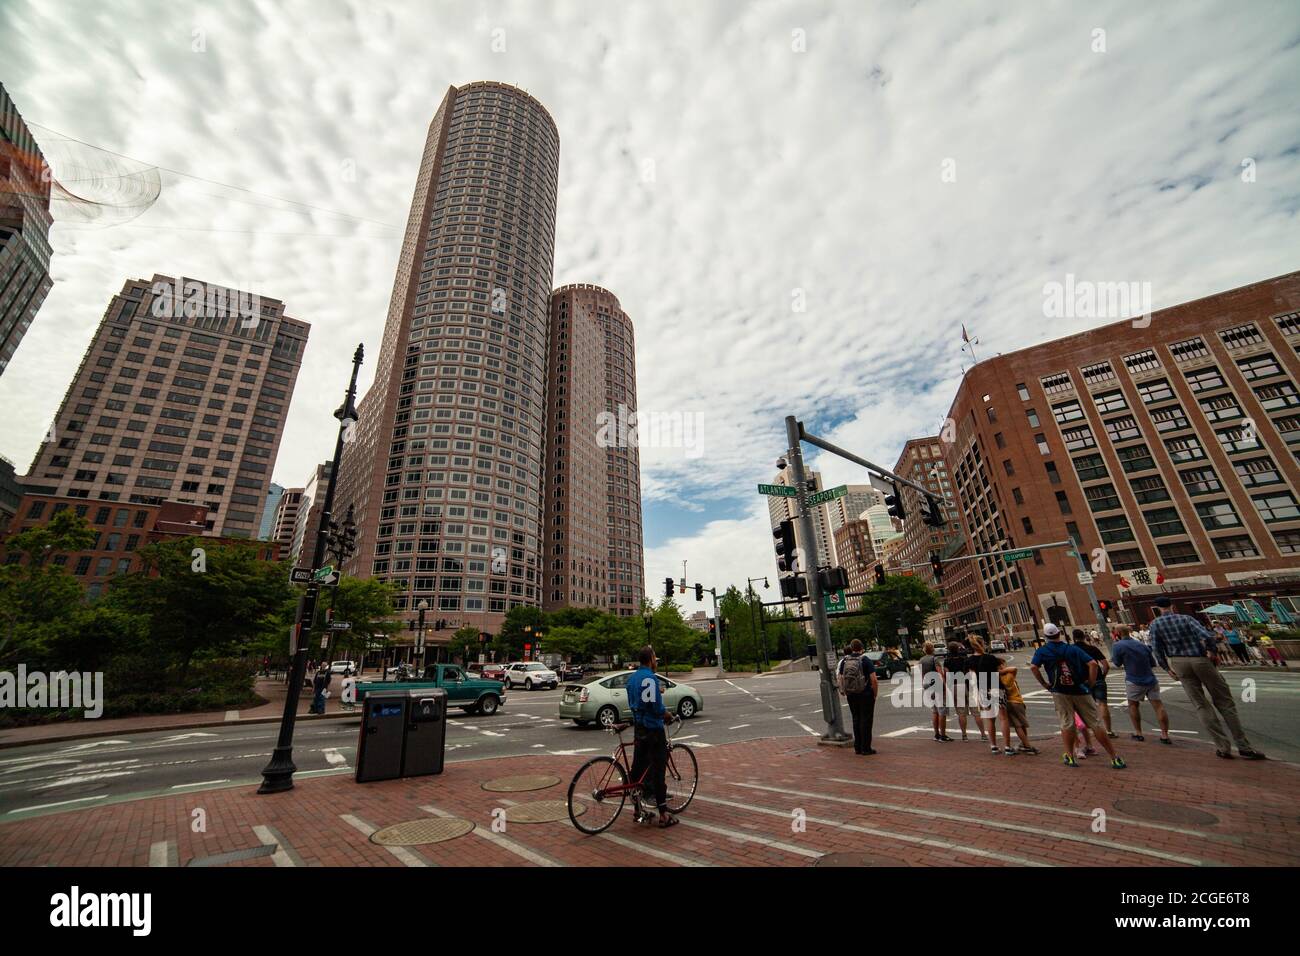 Boston, Massachusetts, États-Unis - 25 mai 2015 - « The Corner of Atlantic ave & Seaport Blvd - peu de personnes attendent le feu vert pour traverser la route » Banque D'Images